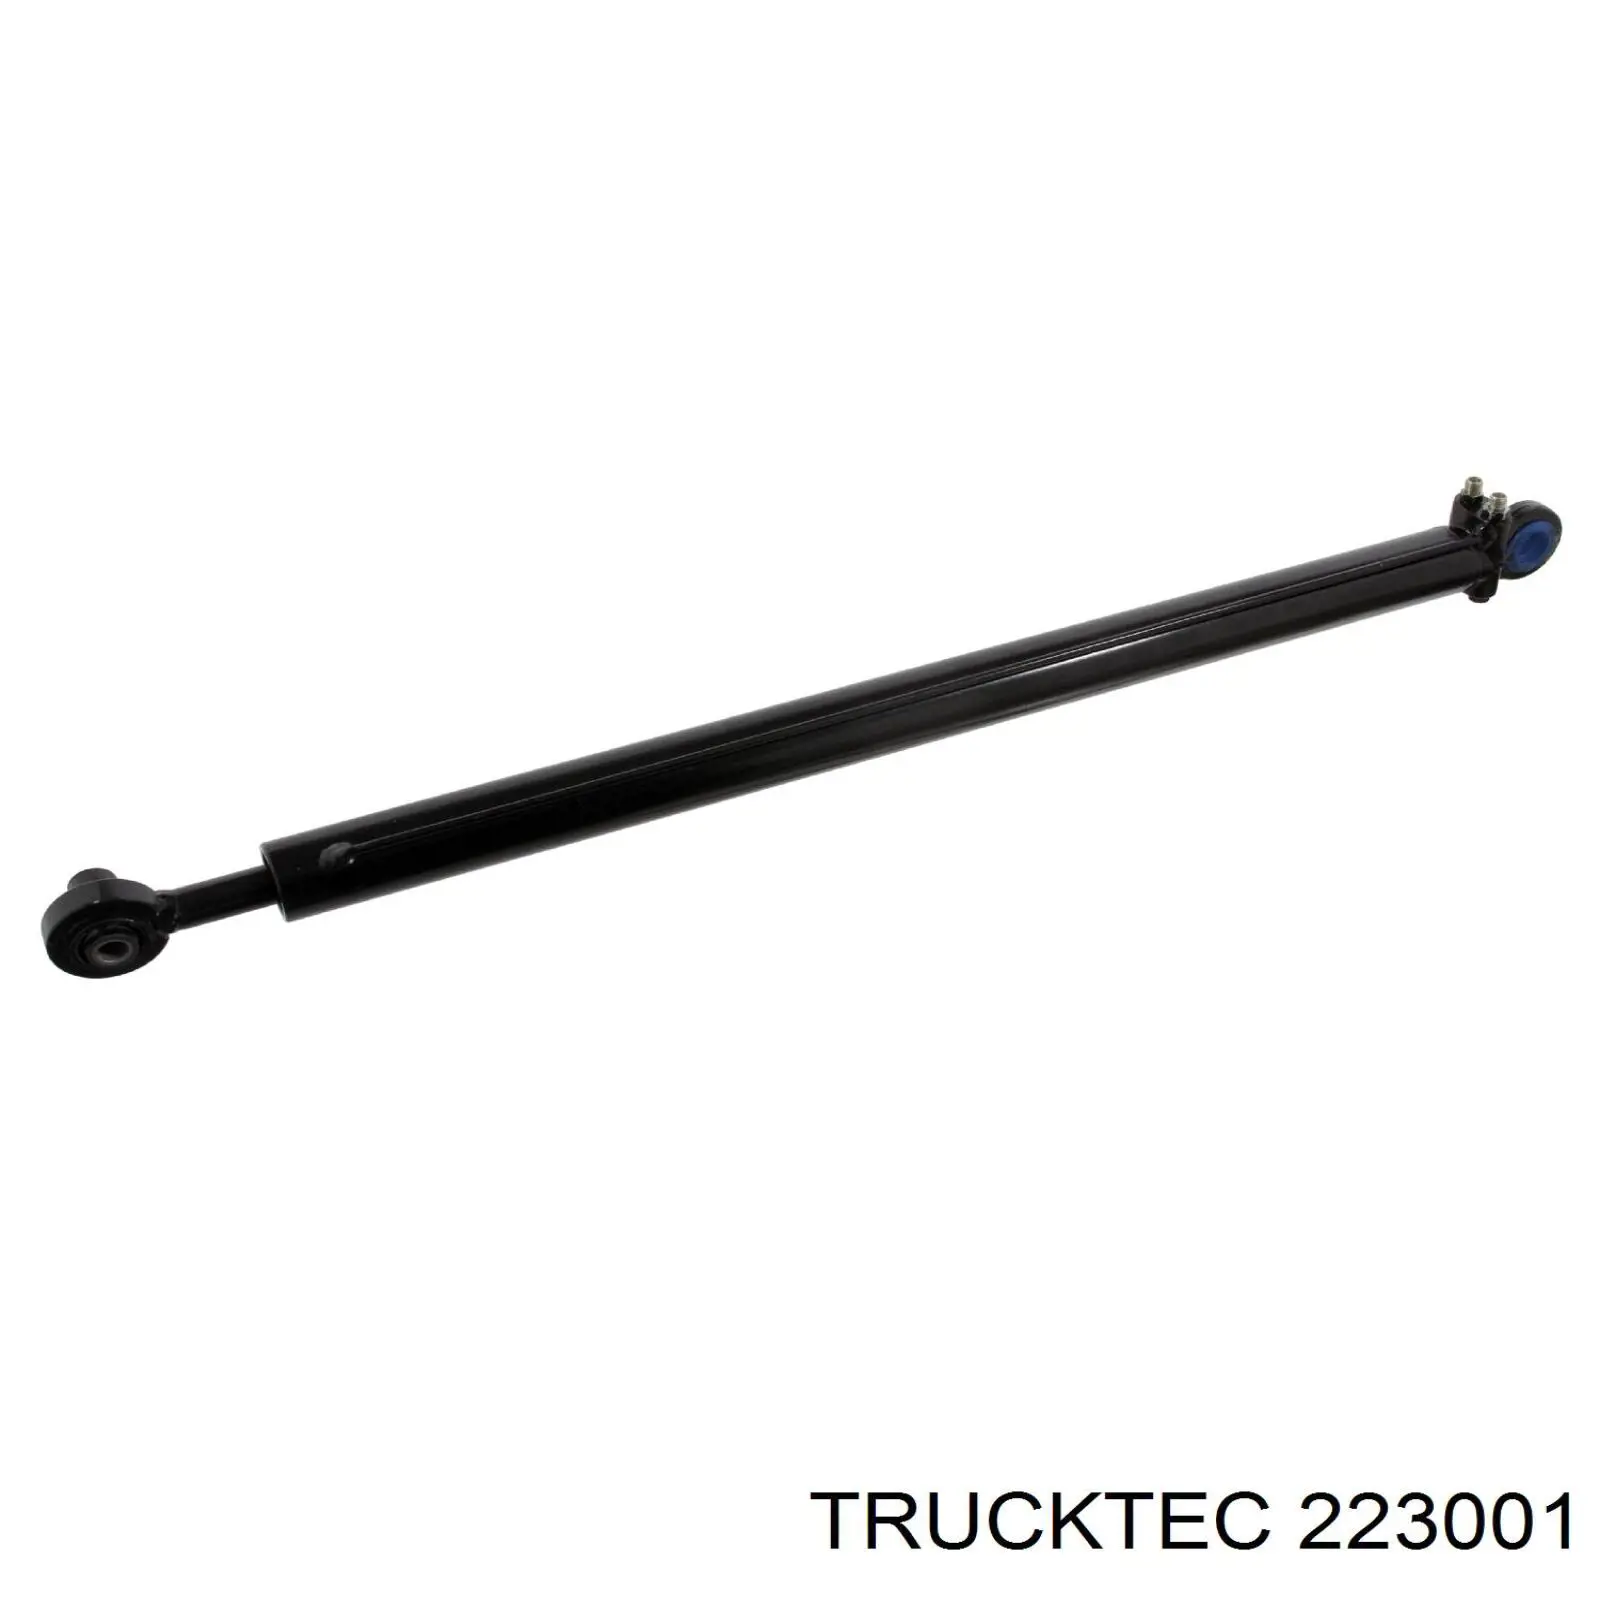 223001 Trucktec опорний підшипник первинного валу кпп (центрирующий підшипник маховика)